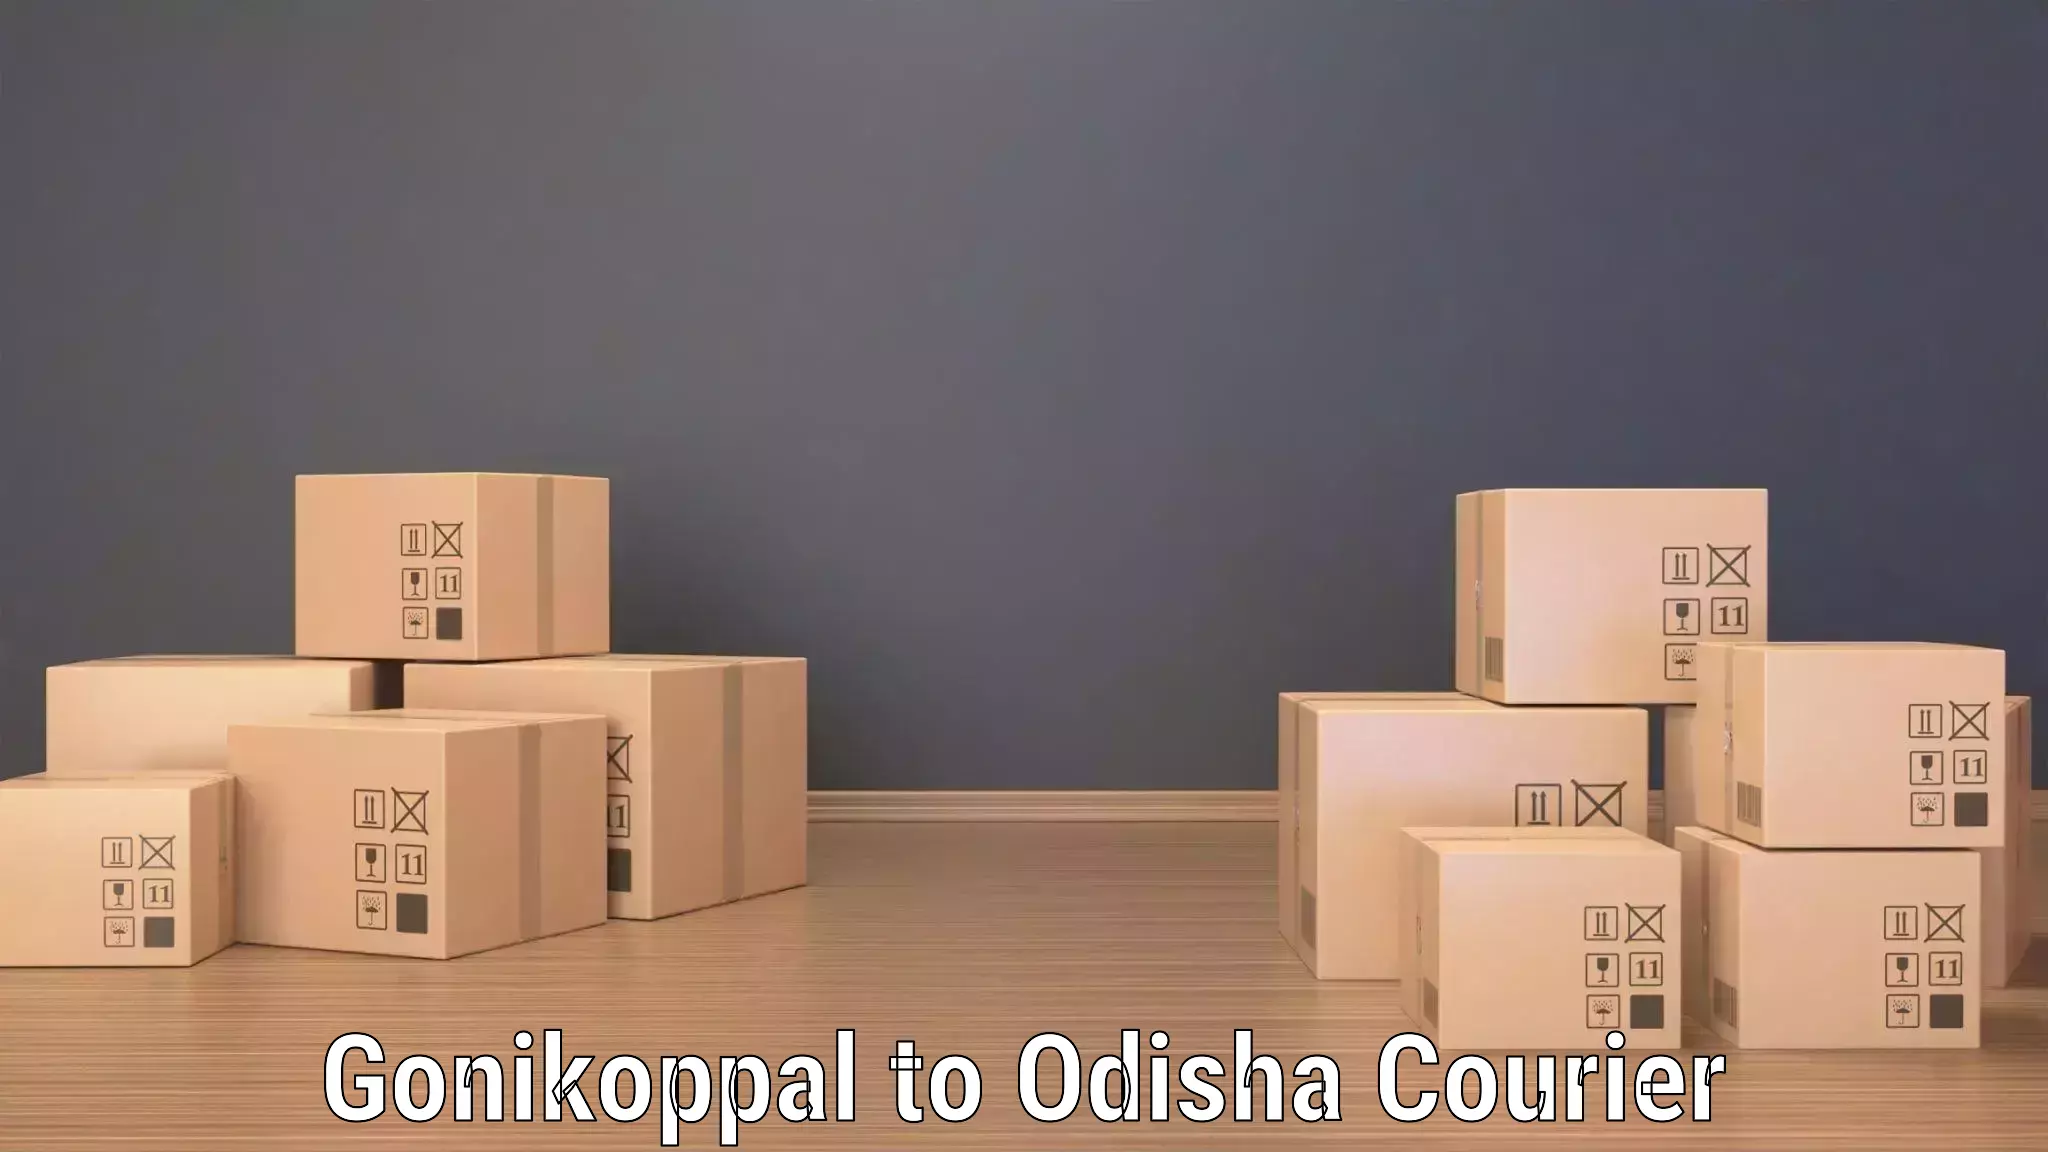 Efficient logistics management Gonikoppal to Muniguda